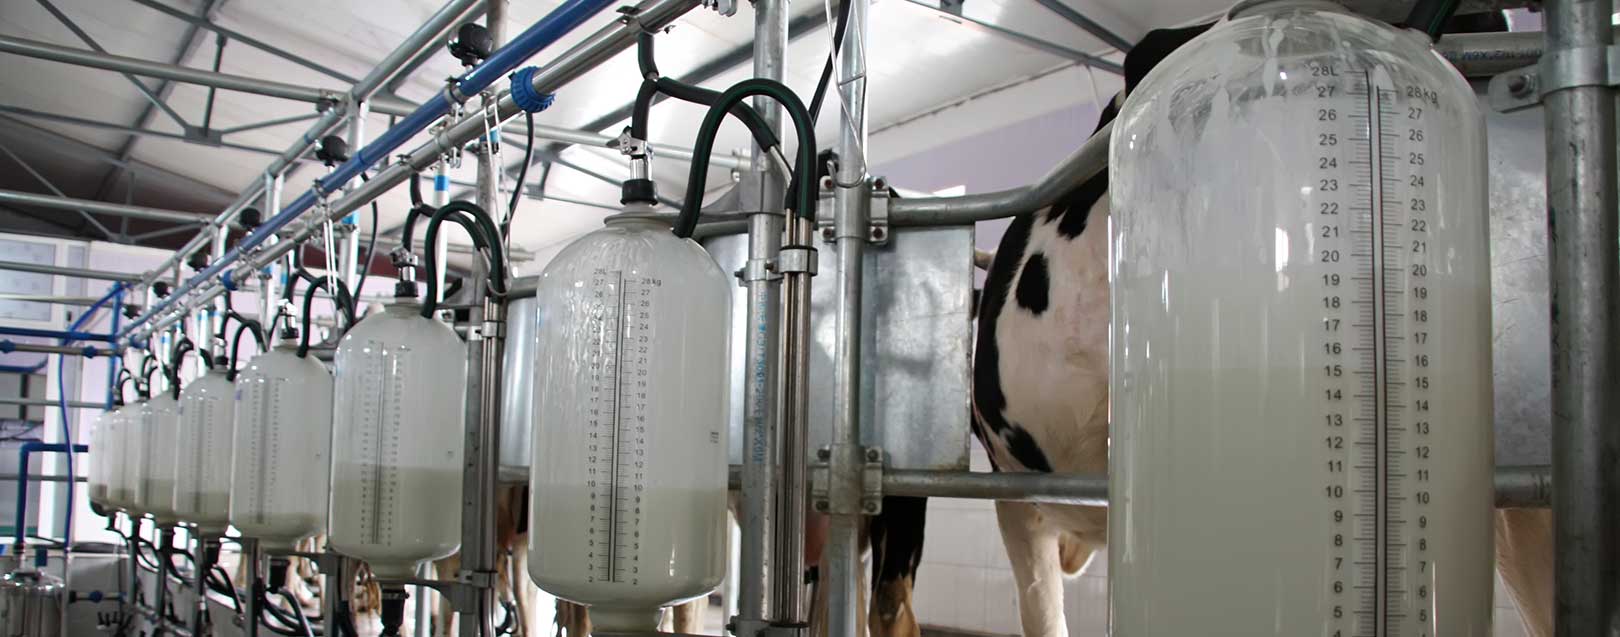 Молоко полученное от коровы 5. Производство молока. Резервуар для хранения молока. Производство сырого молока. Производство молочной продукции.